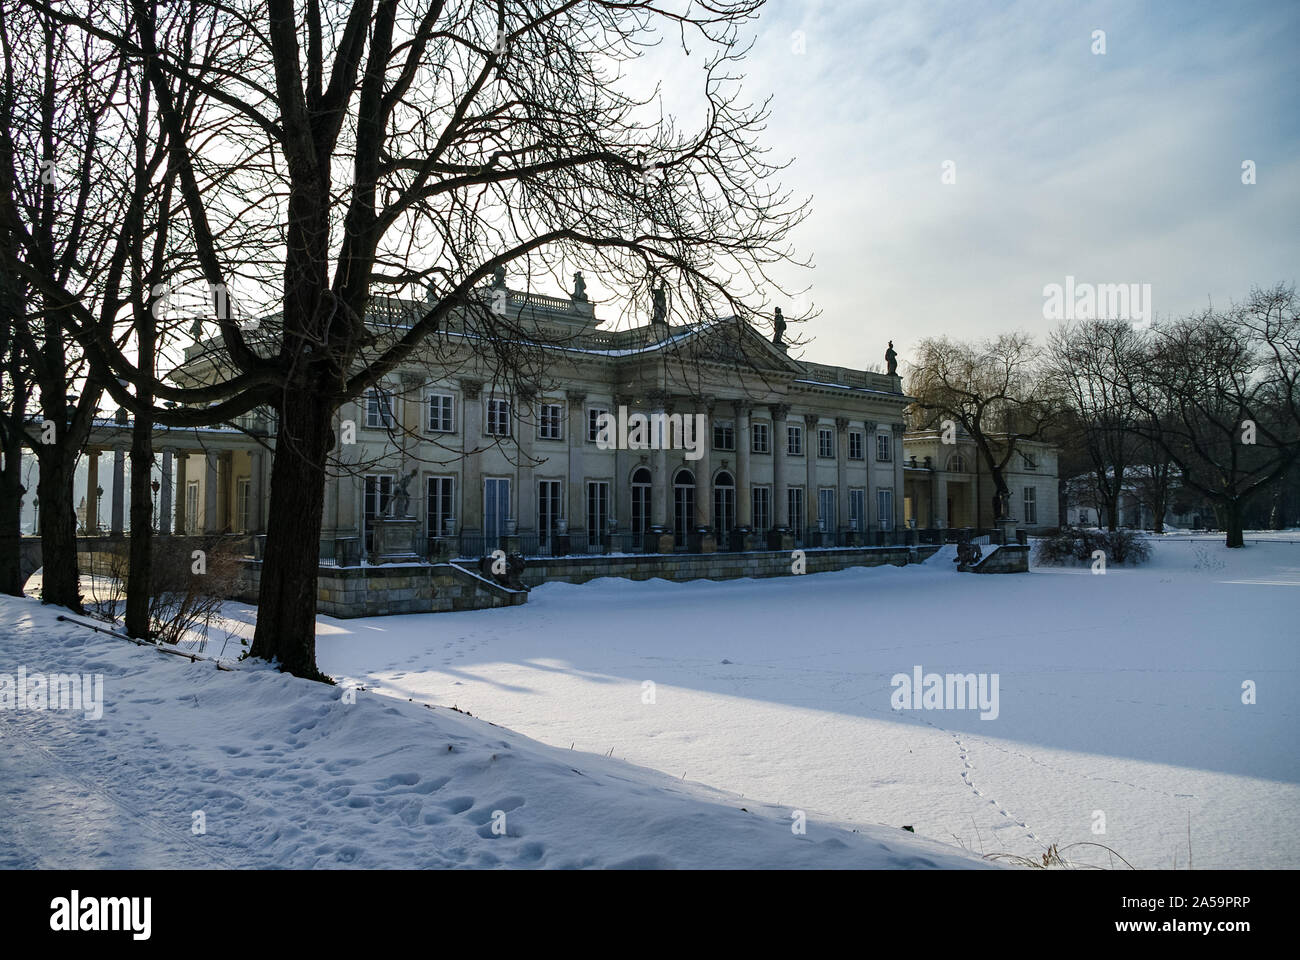 The Lazienki palace in Lazienki Park. Winter landscape with snow. Warsaw. Lazienki Krolewskie, Poland Stock Photo